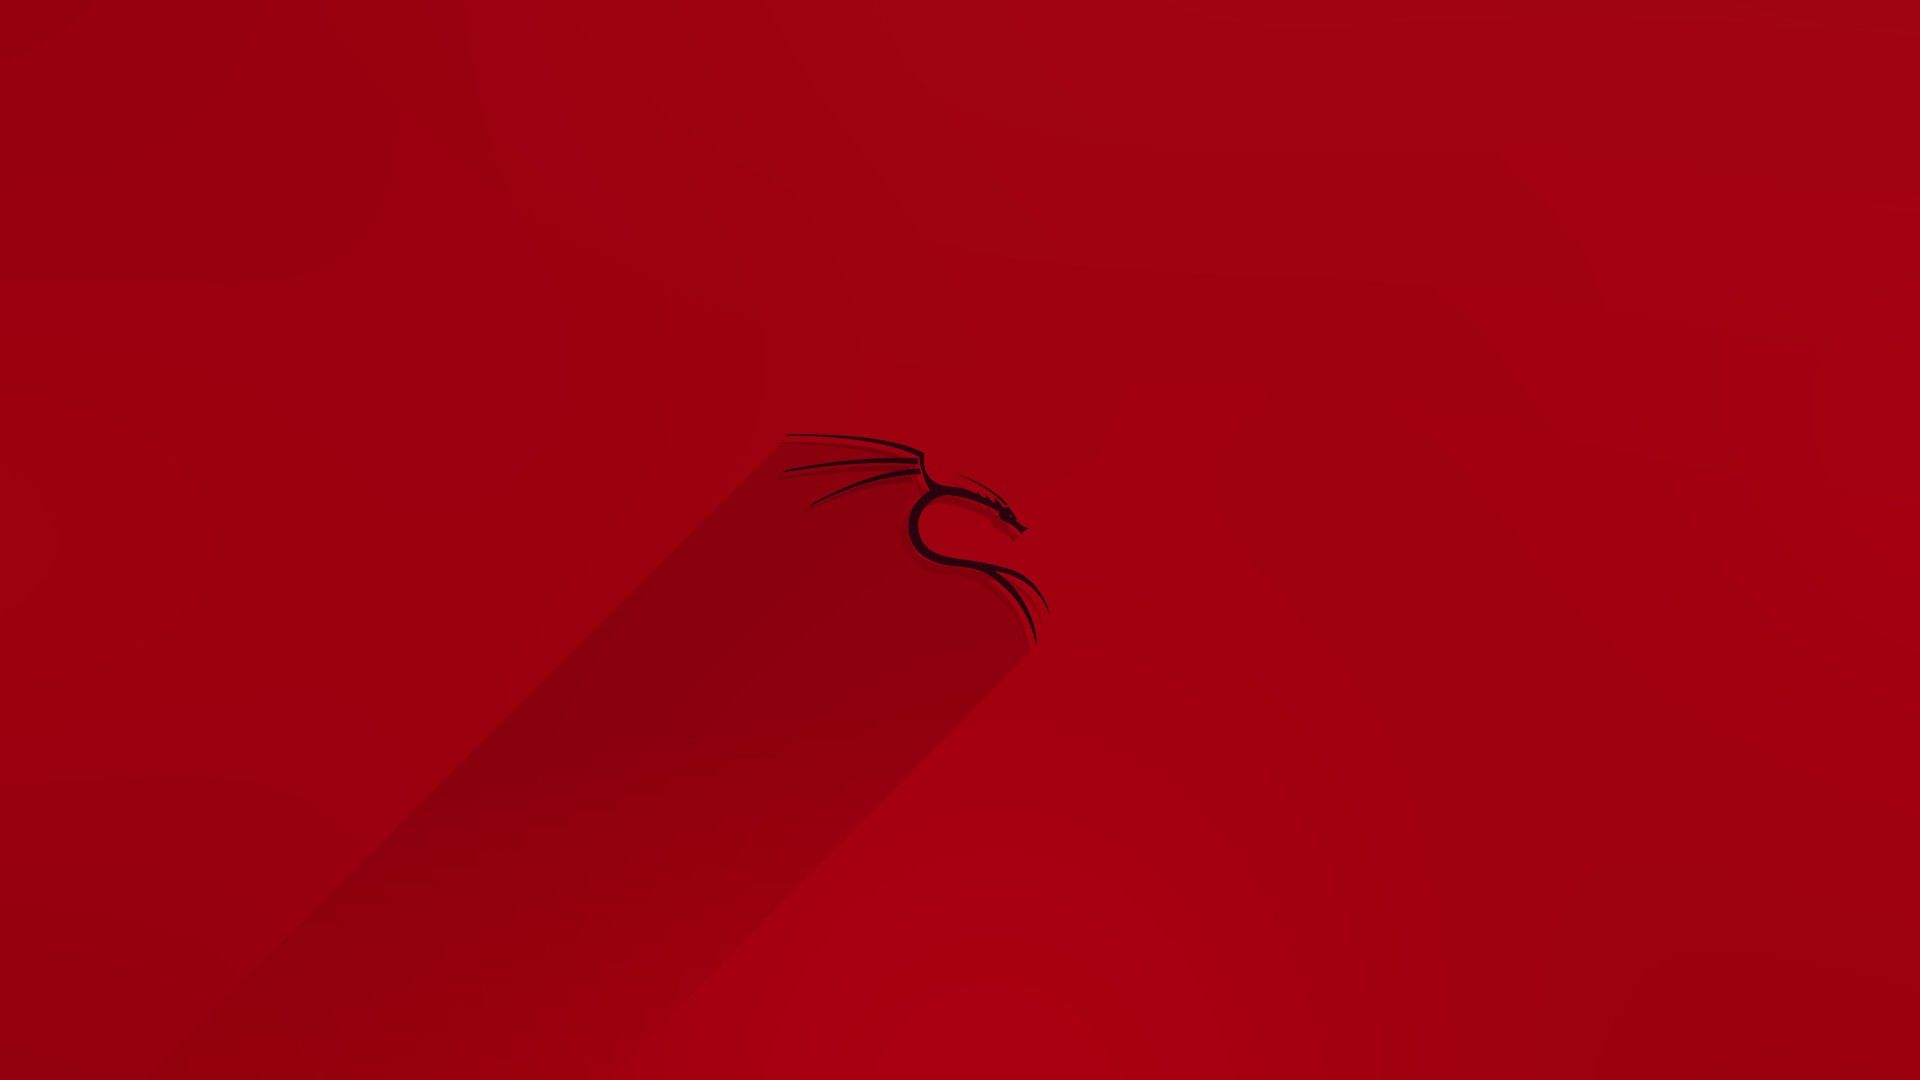 Kali, Kali Linux, Red, Linux Wallpaper HD / Desktop and Mobile Background